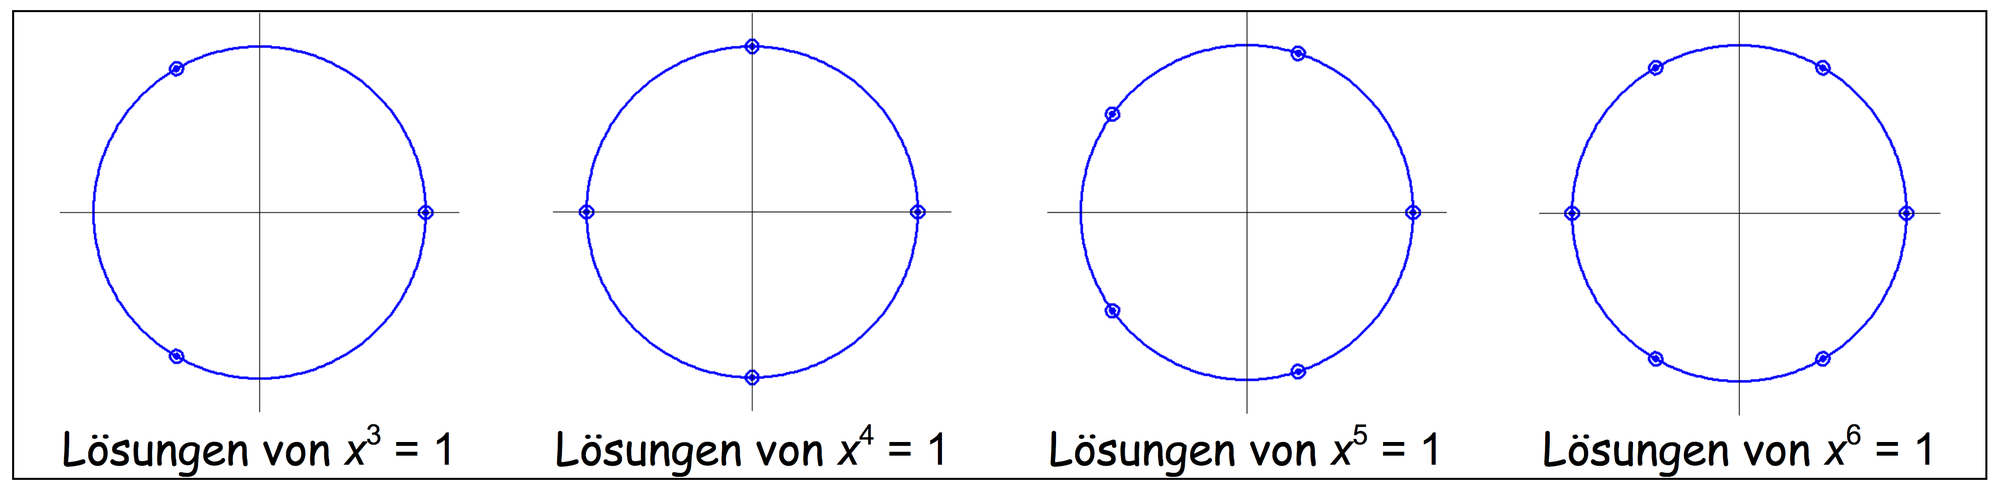 Lösungen von x^n=1